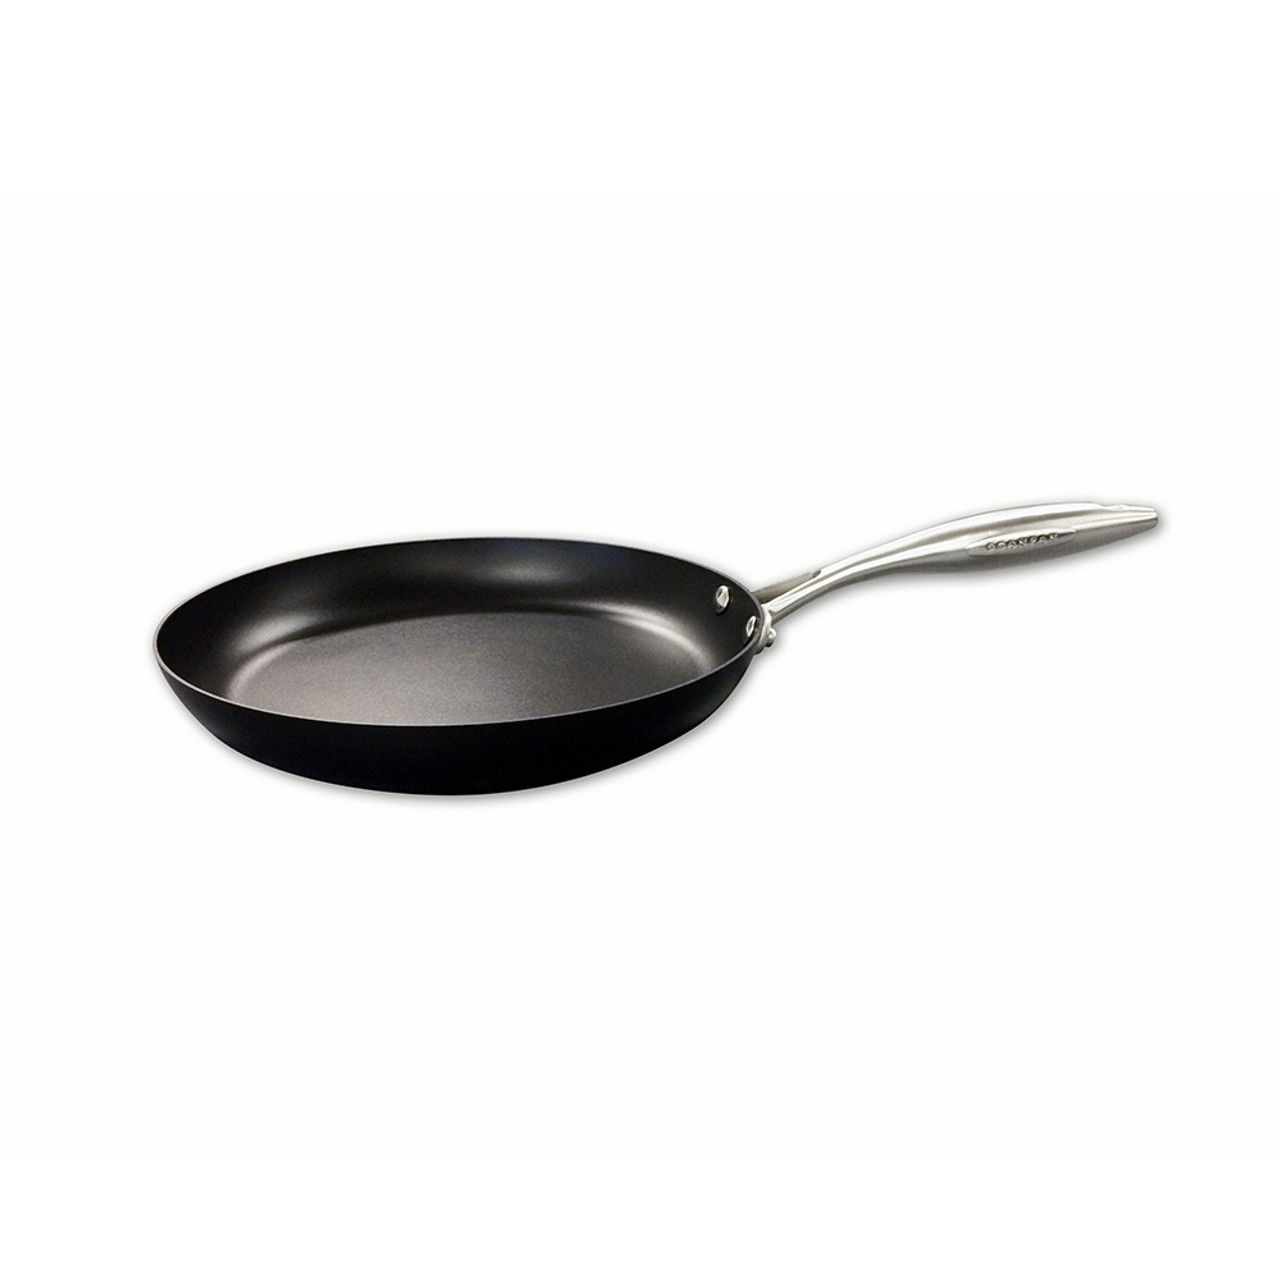 Scanpan Classic 12.5, 32cm Nonstick Fry Pan, Black